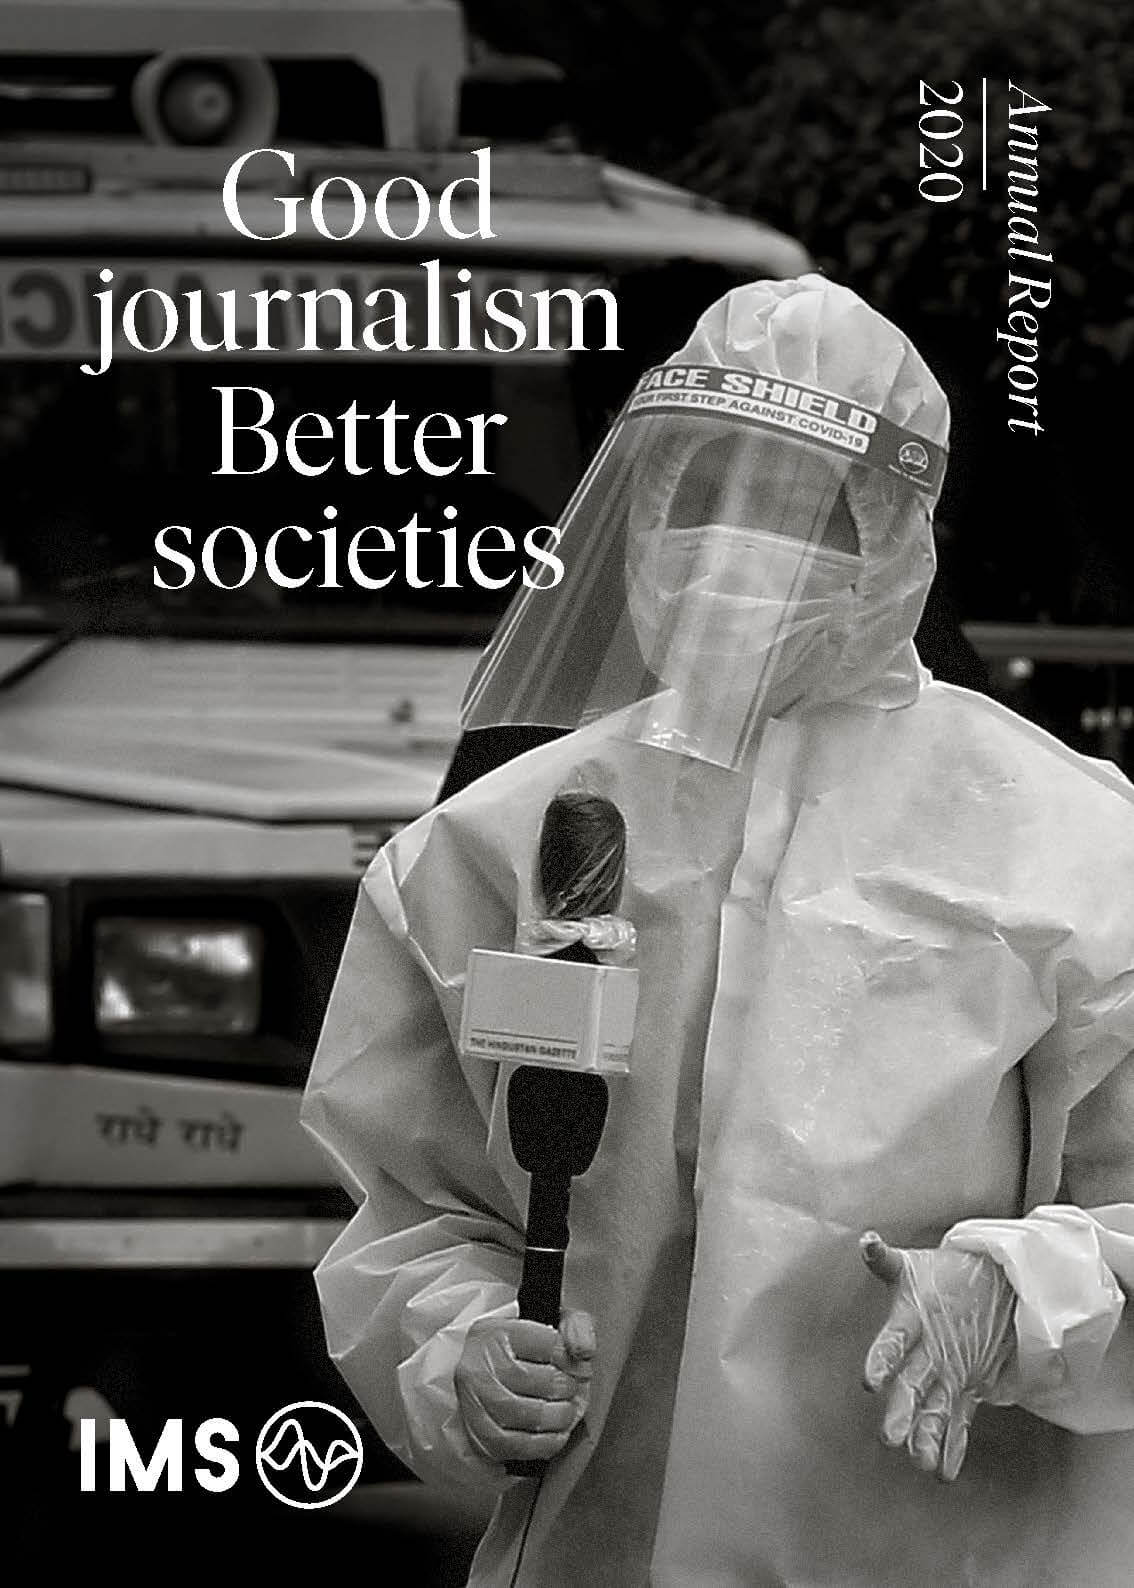 Defending societies with good journalism